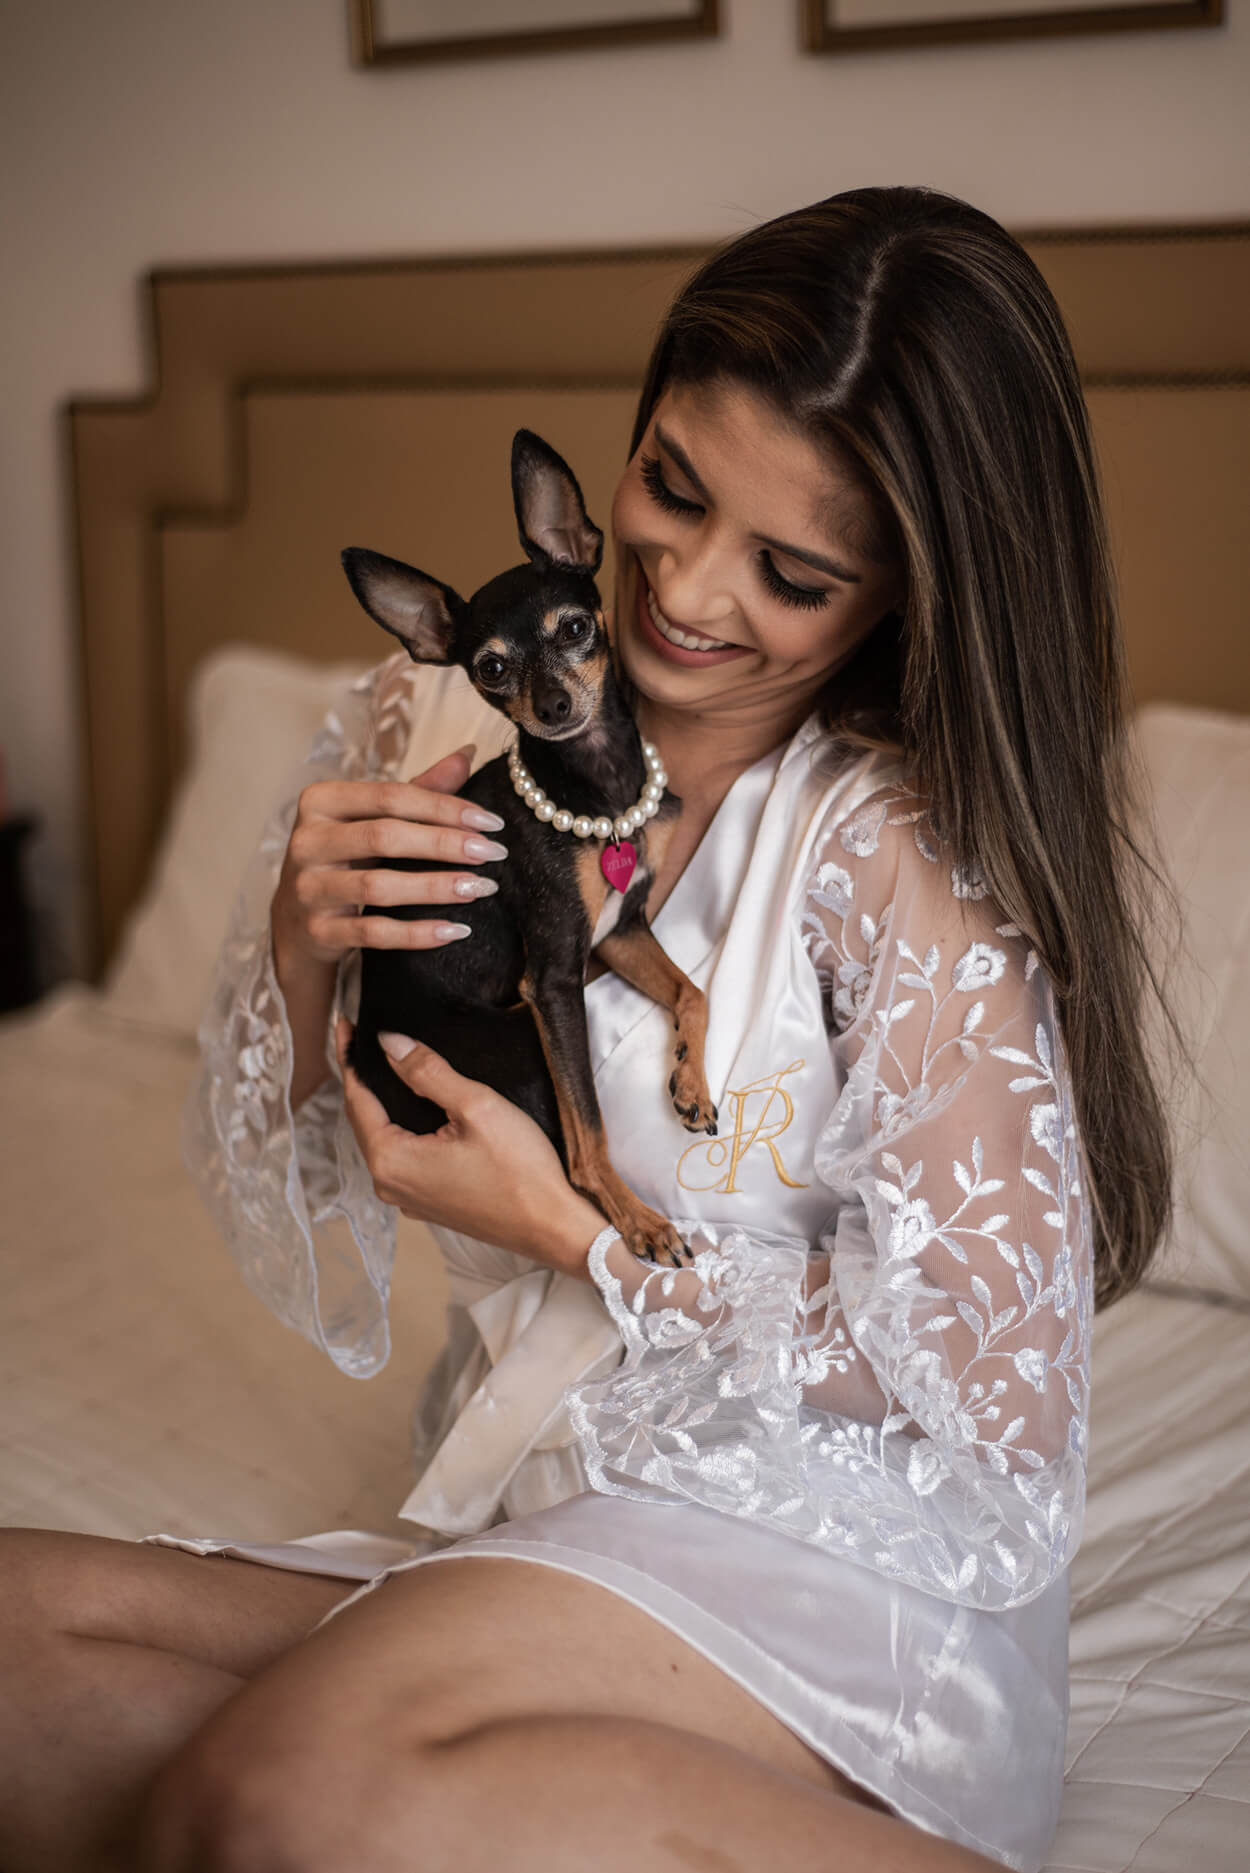 Noiva com robe branco segurando cachorrinha no colo